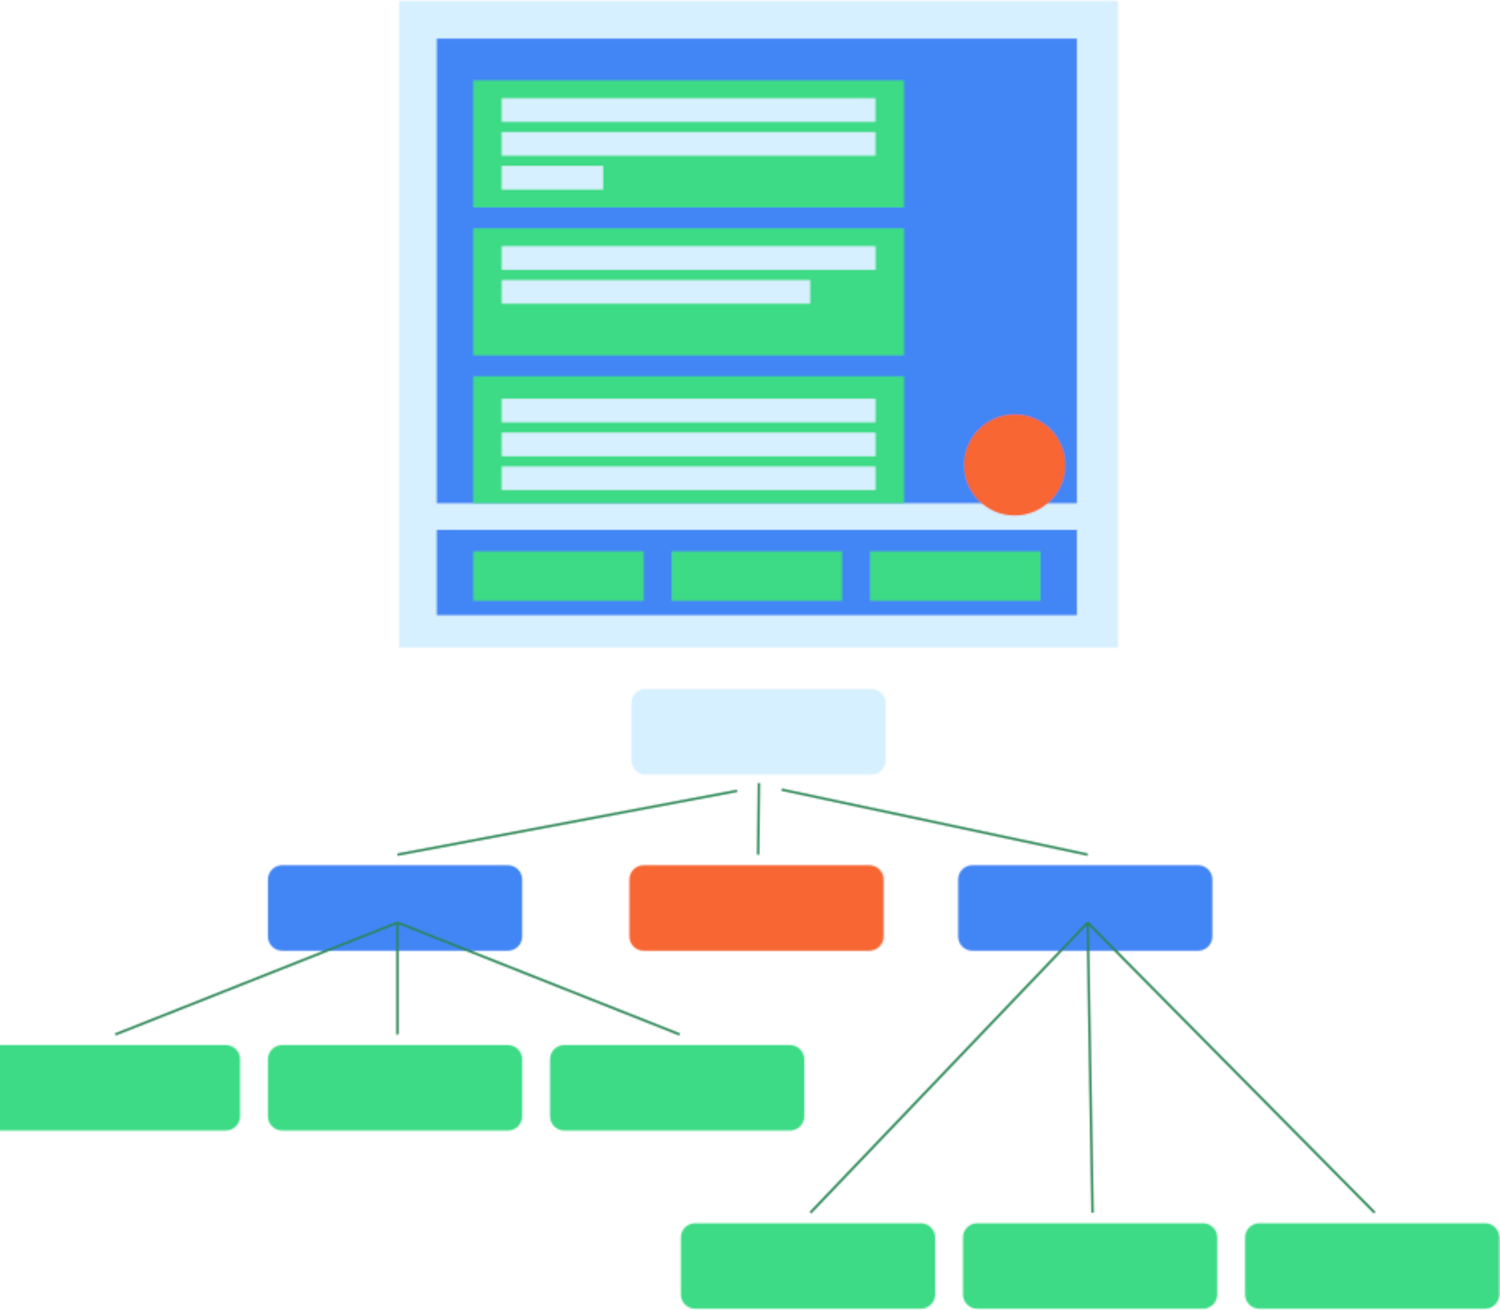 Diagramma che mostra un tipico layout di UI e il modo in cui questo layout sarebbe mappato a un albero semantico corrispondente